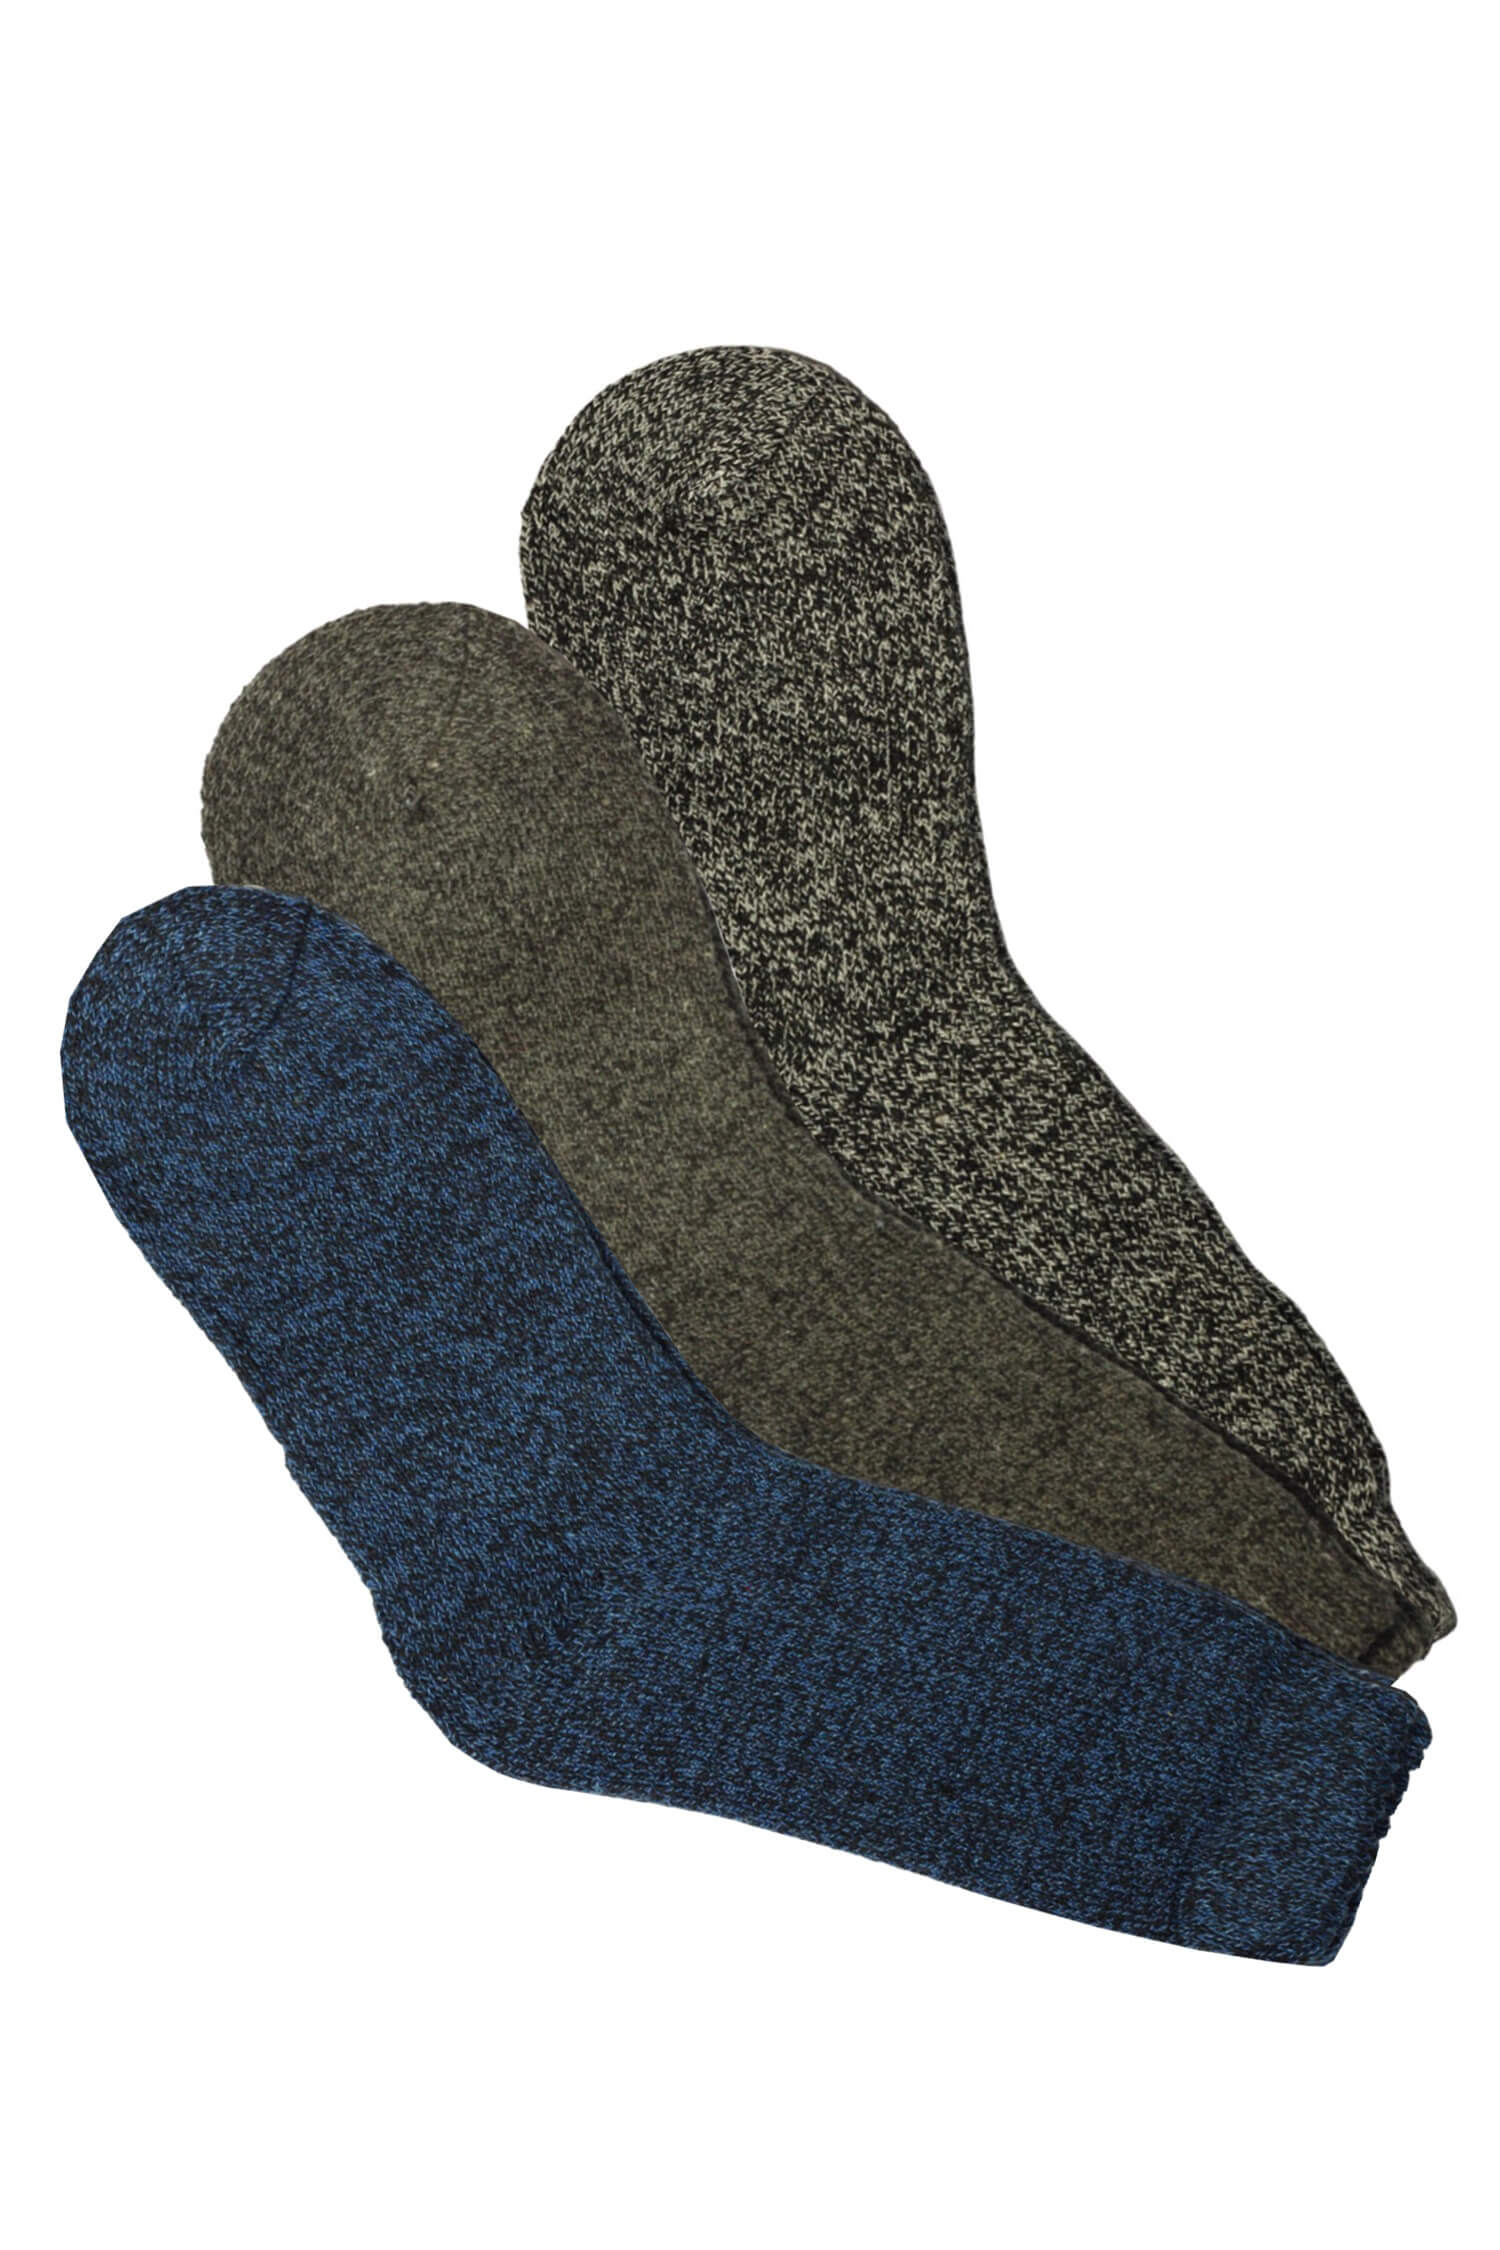 Alpaca dámské teplé ponožky WZ11 -3bal. 35-38 šedá